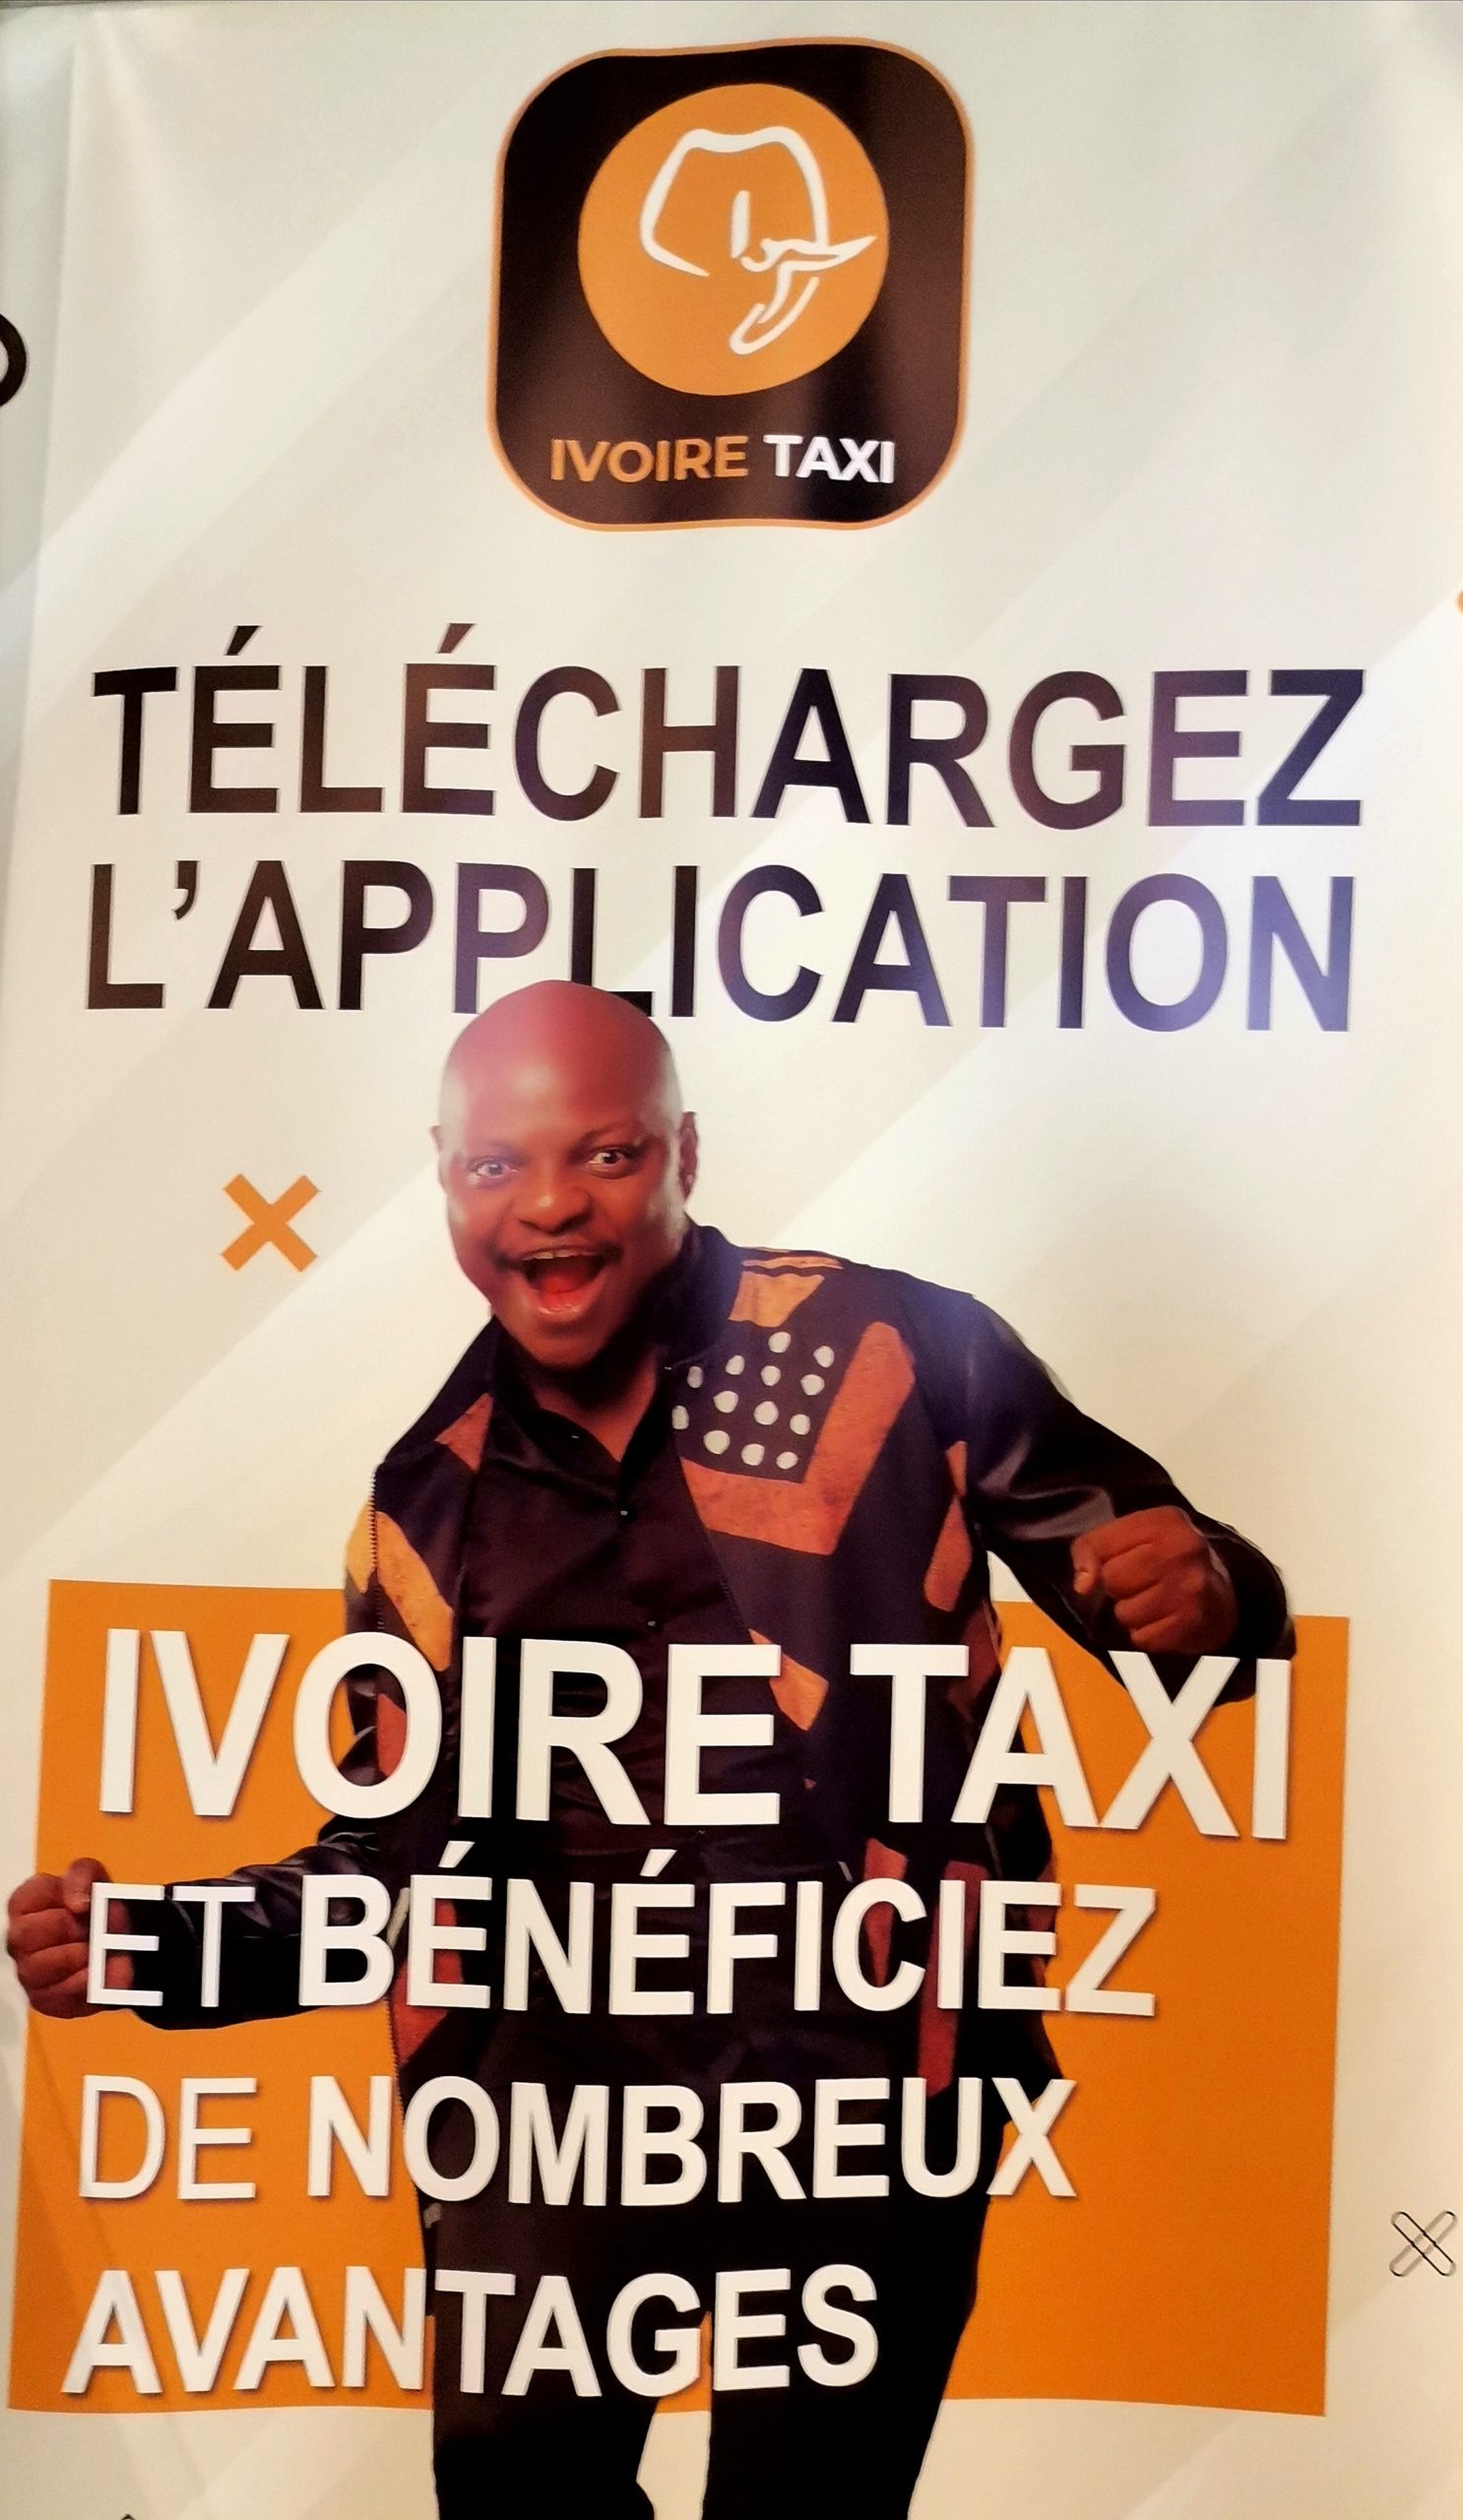 Côte d’Ivoire :Présentation de l’application du Taxi Ivoirien « Ivoire Taxi »